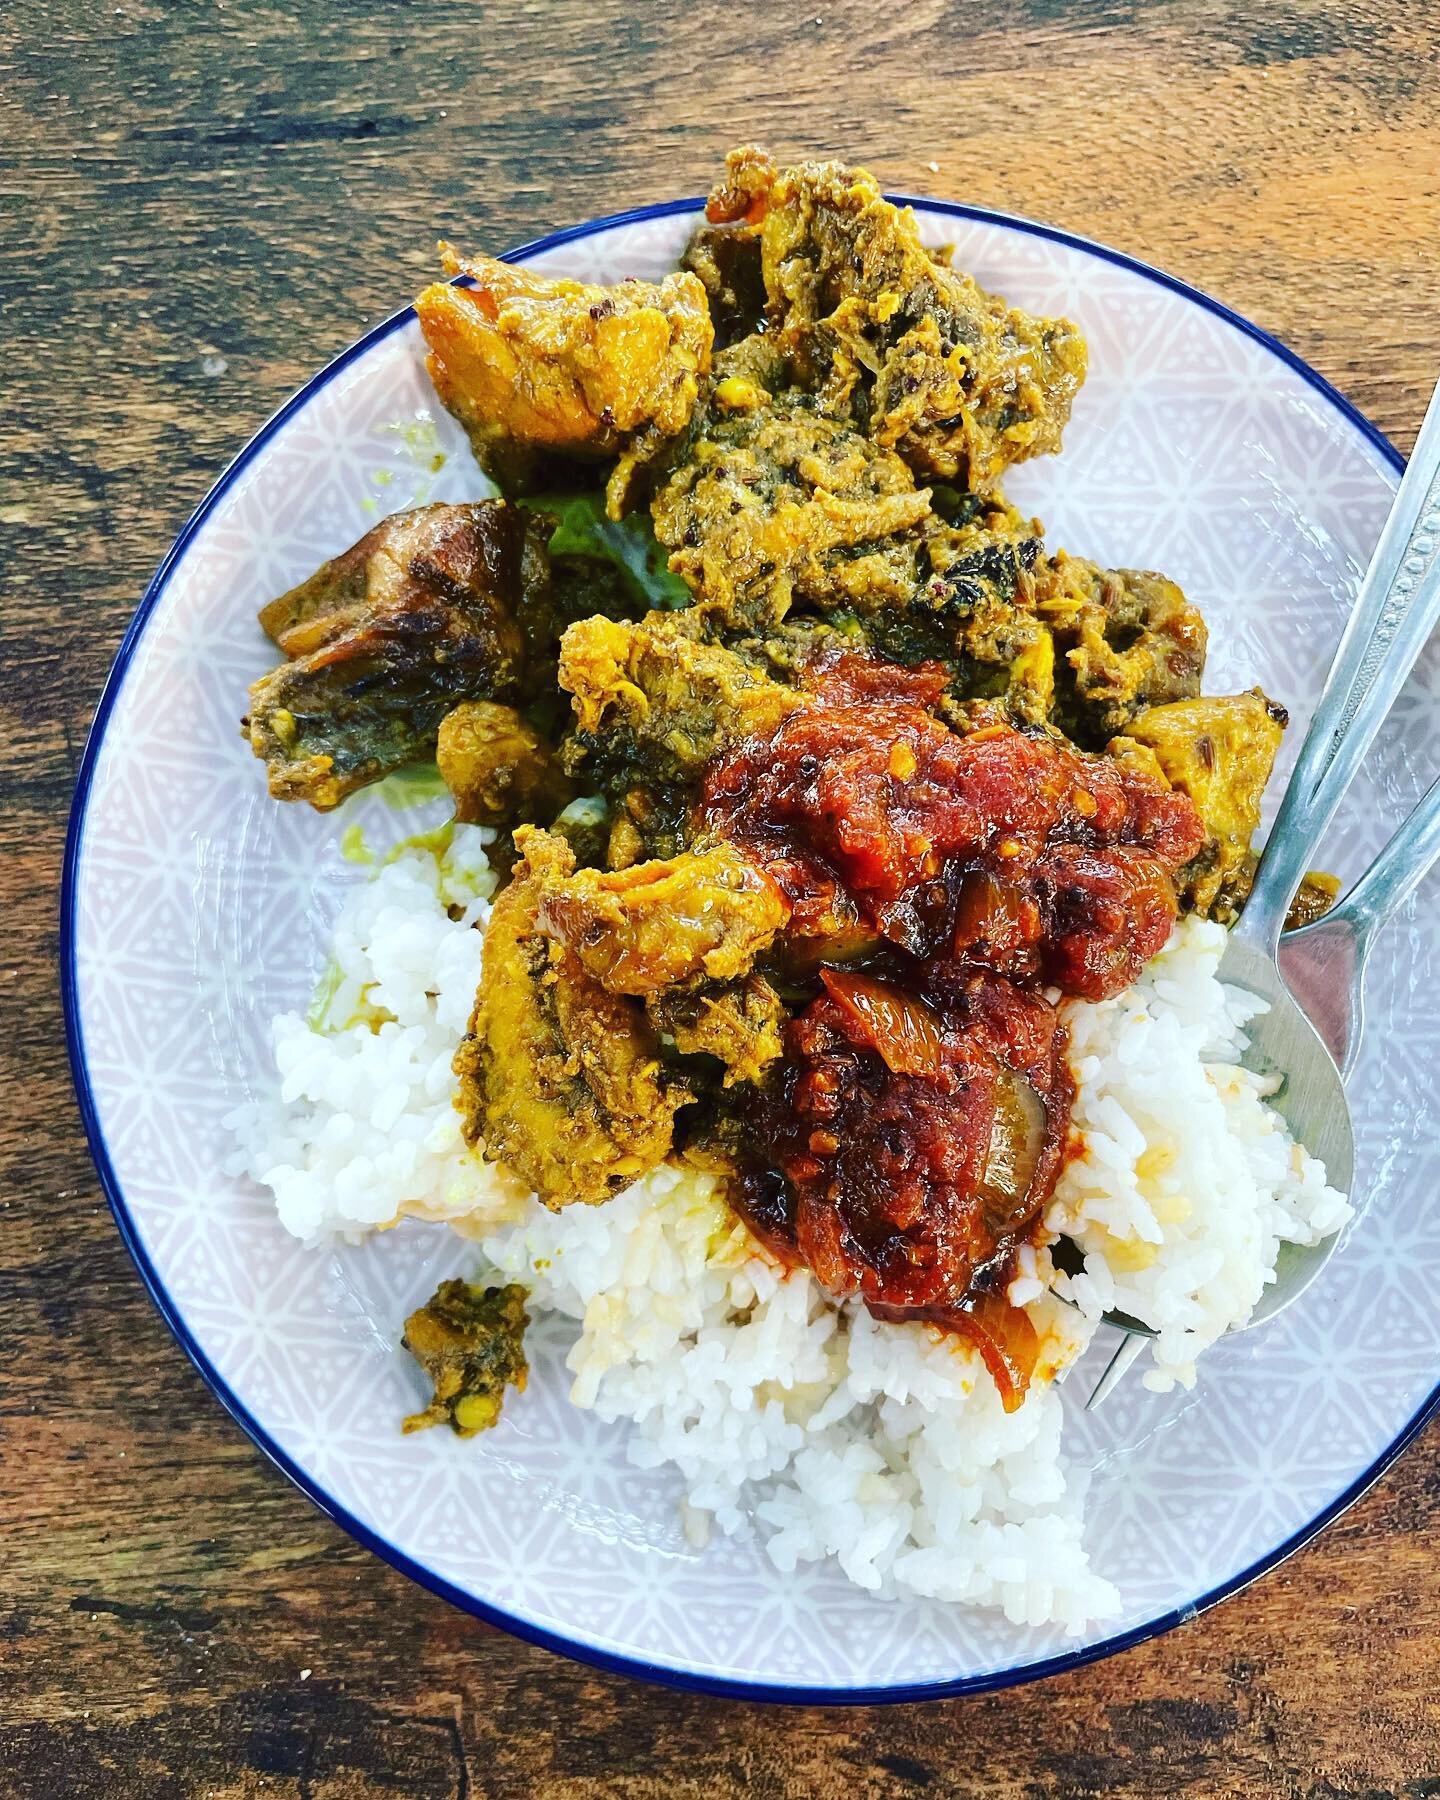 Best Chicken Curry EVER. 

#takeaway #savusavu #indofijian #indofijianfood #curry #indian #savusavu #fiji